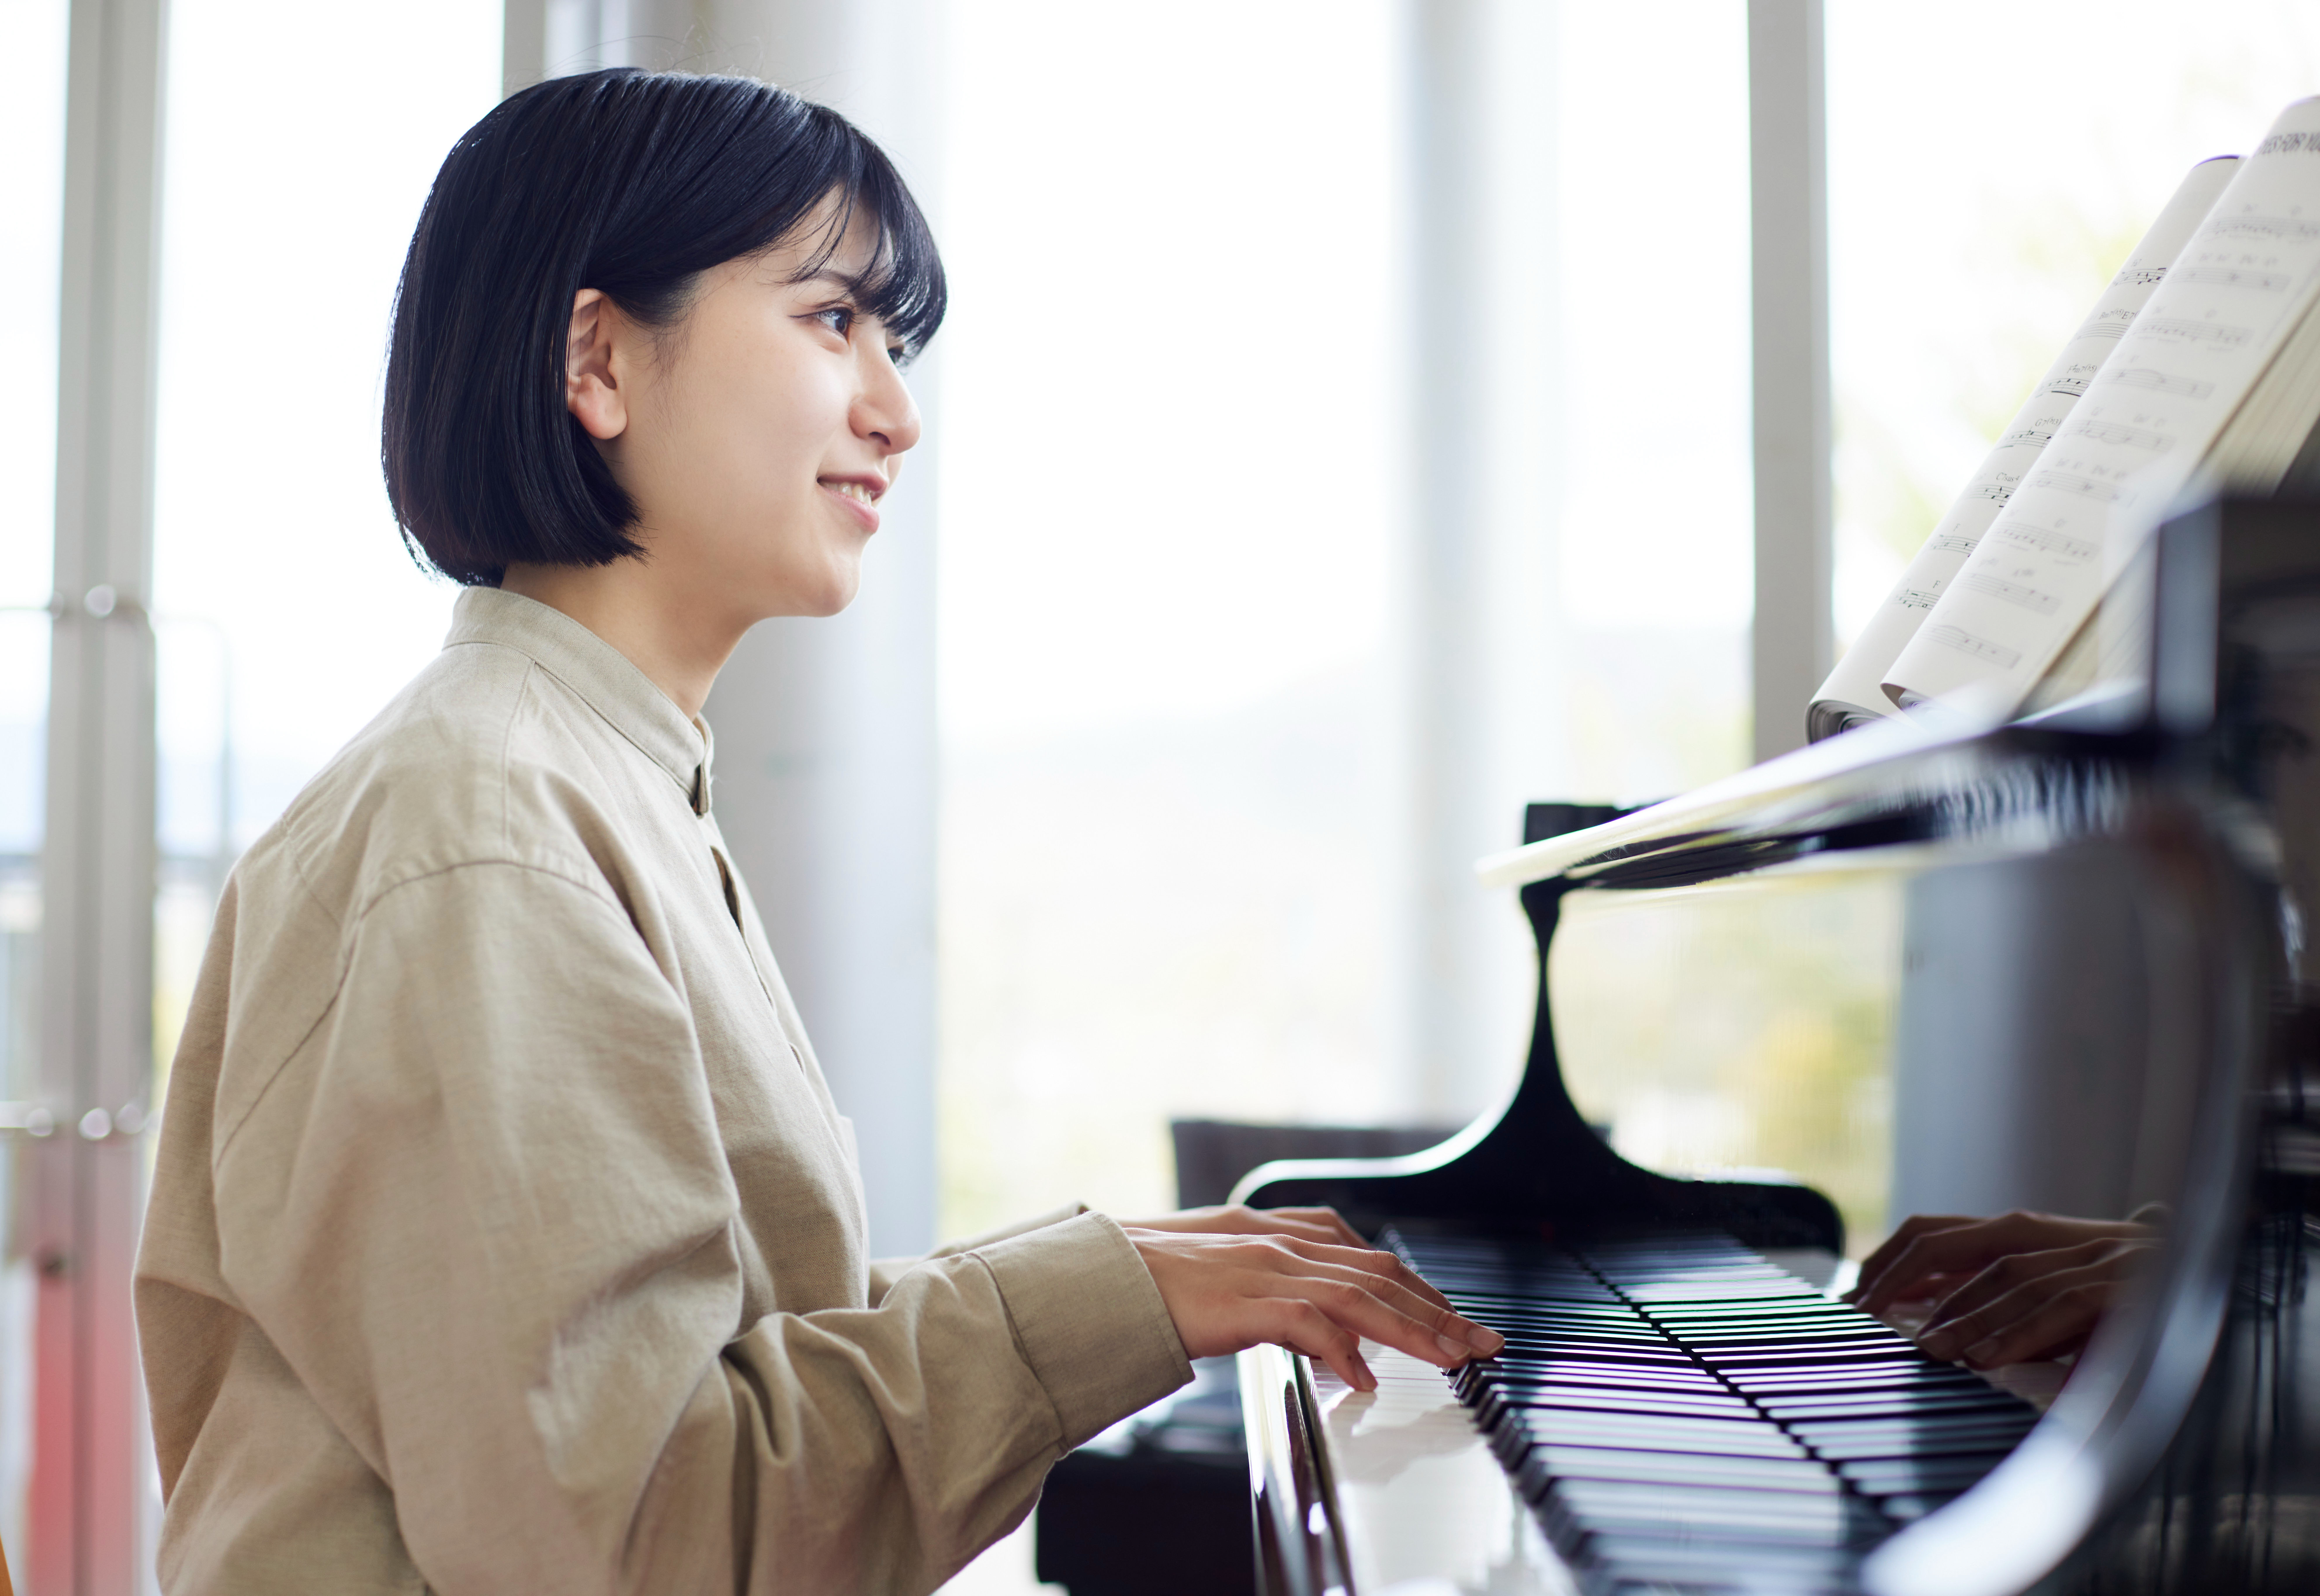 Apprendre le piano en ligne, est-ce possible ?